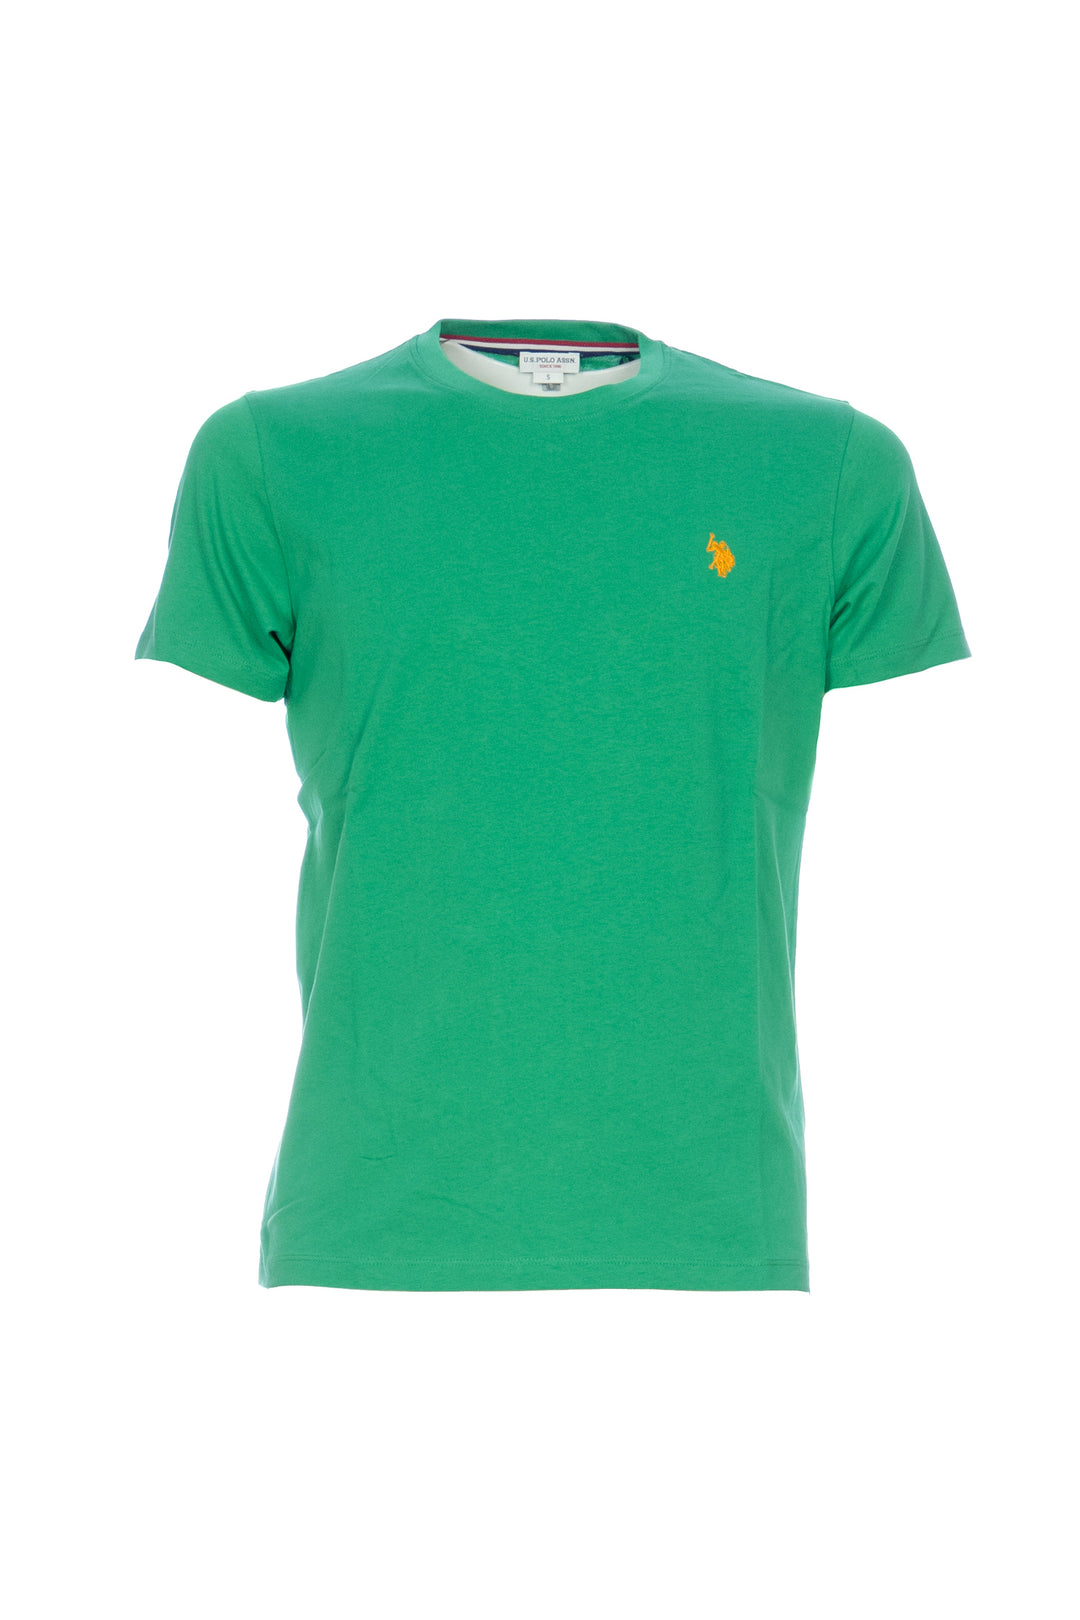 U.S. POLO ASSN. T-shirt verde in cotone con logo ricamato sul petto - Mancinelli 1954